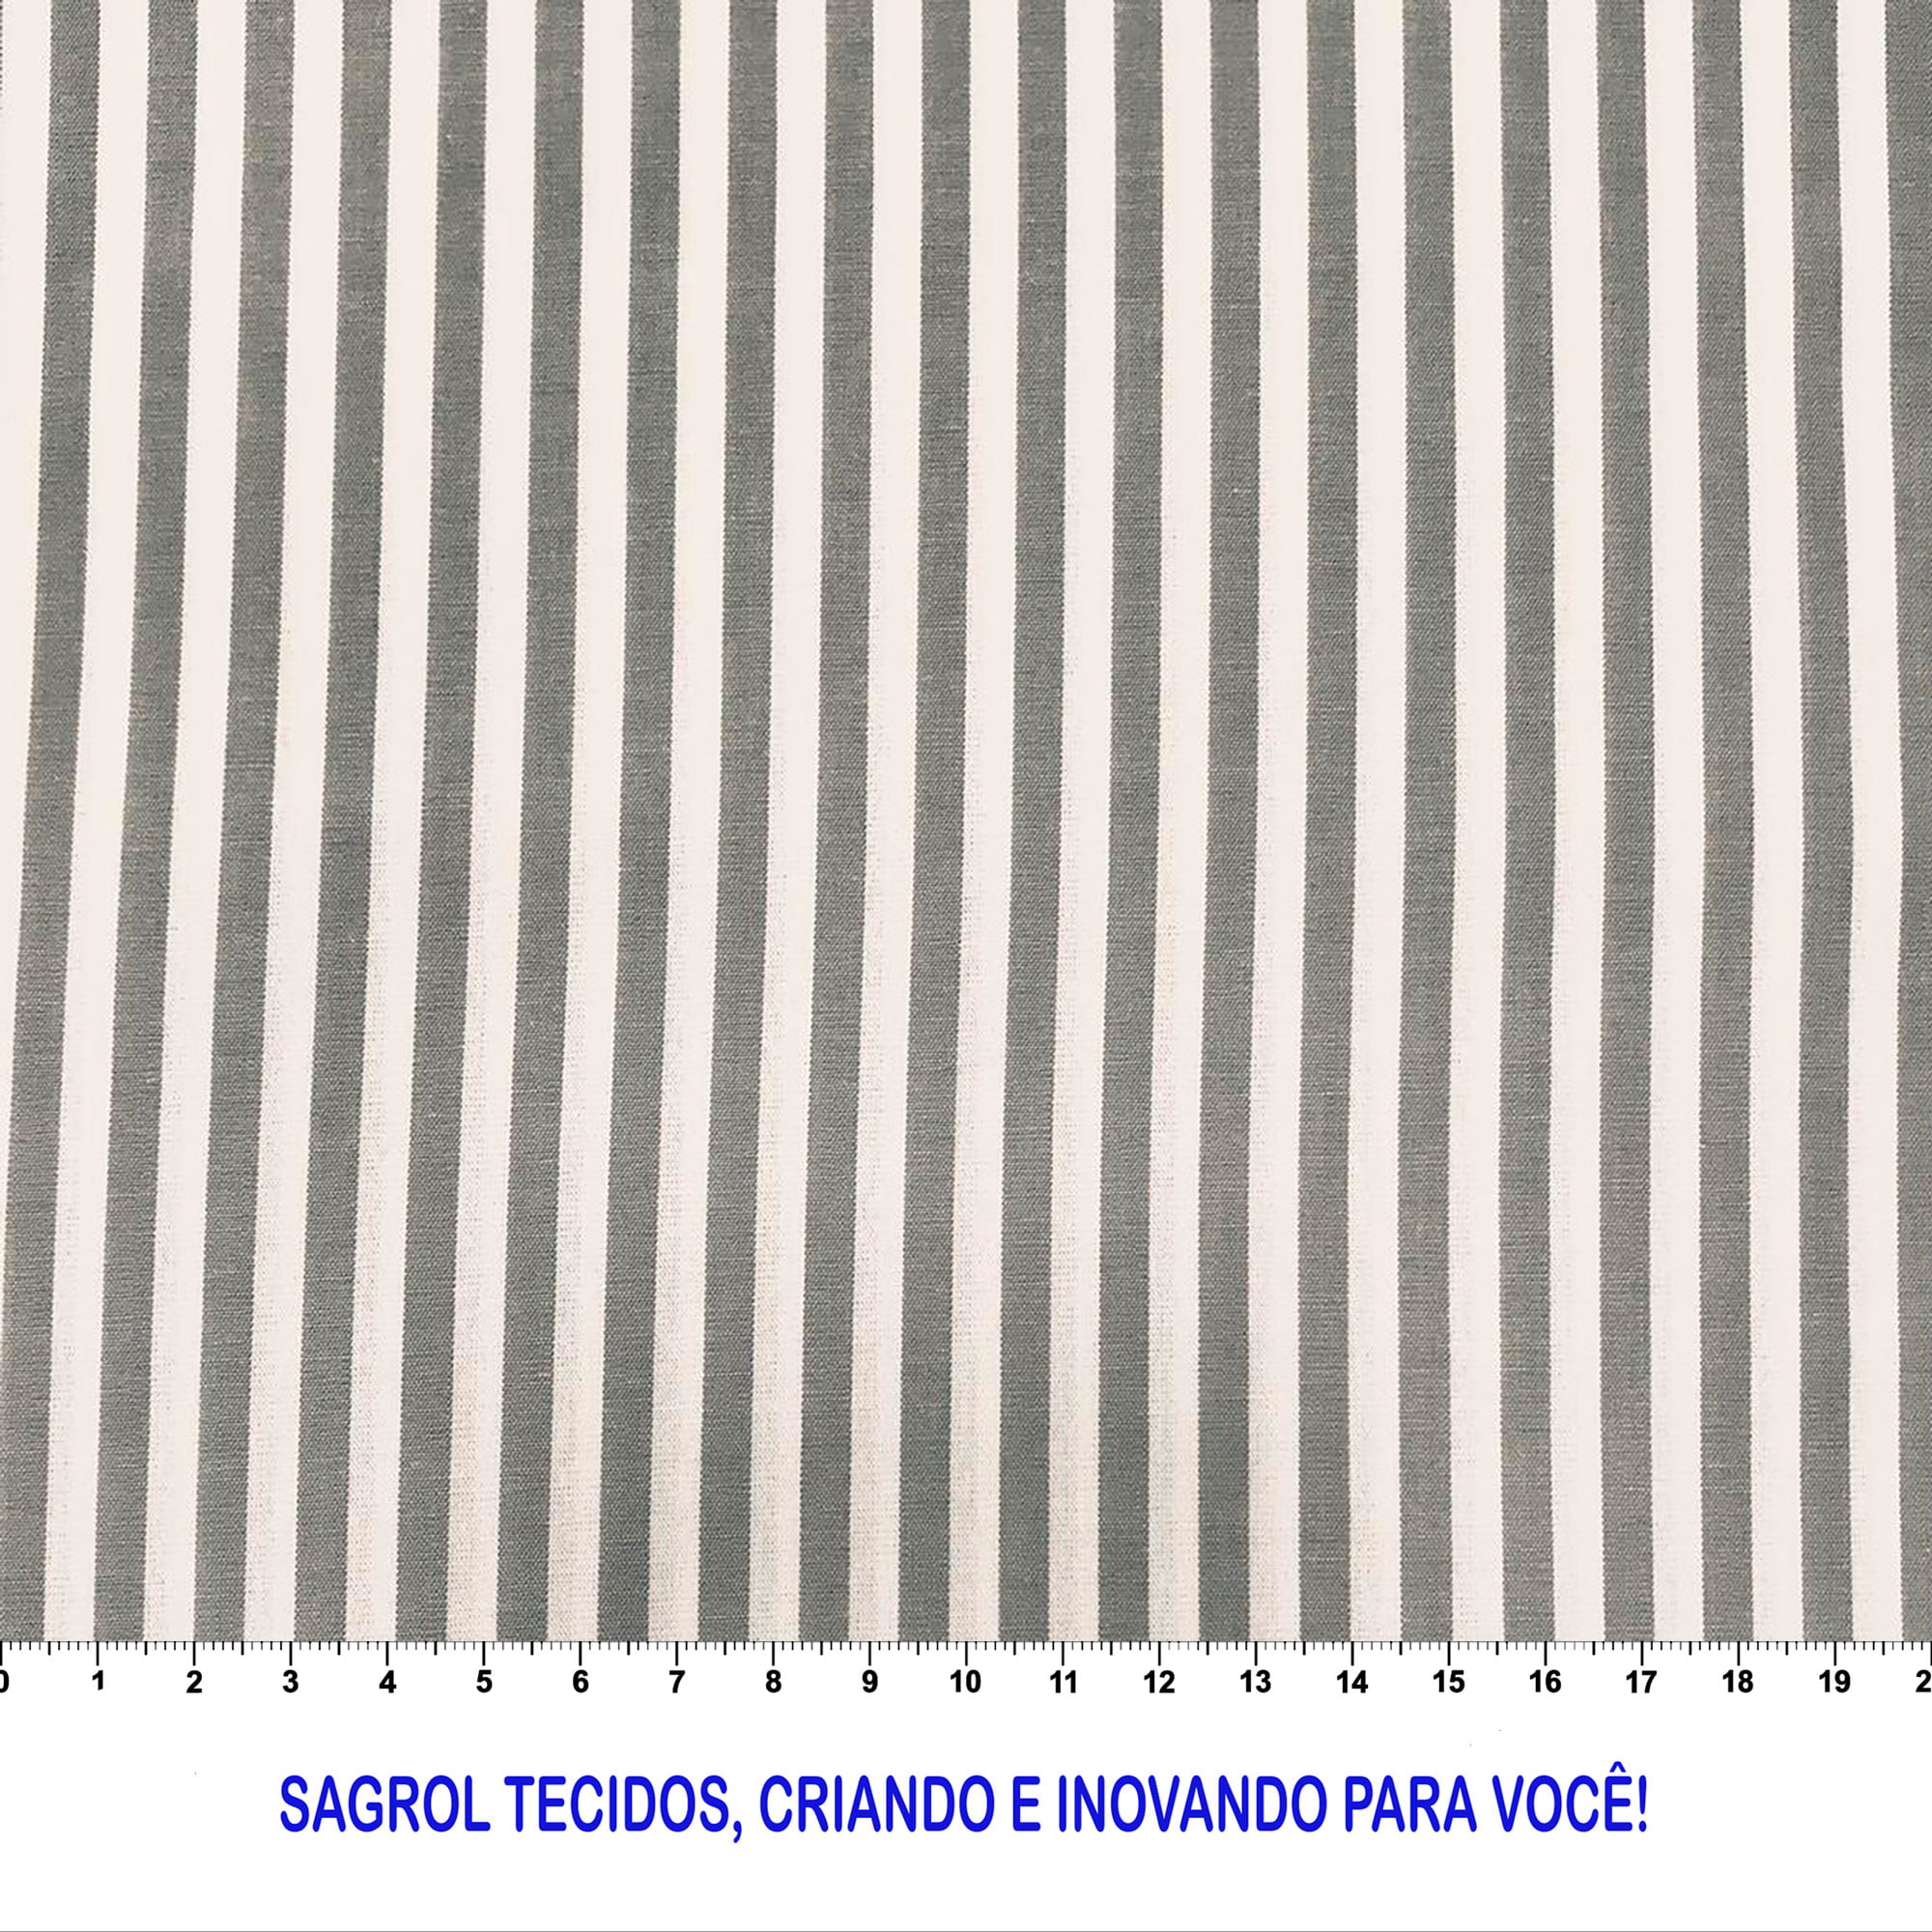 TECIDO TRICOLINE FIO-TINTO LISTRAS L229 CINZA 100% ALGODÃO COM 1,50 LG